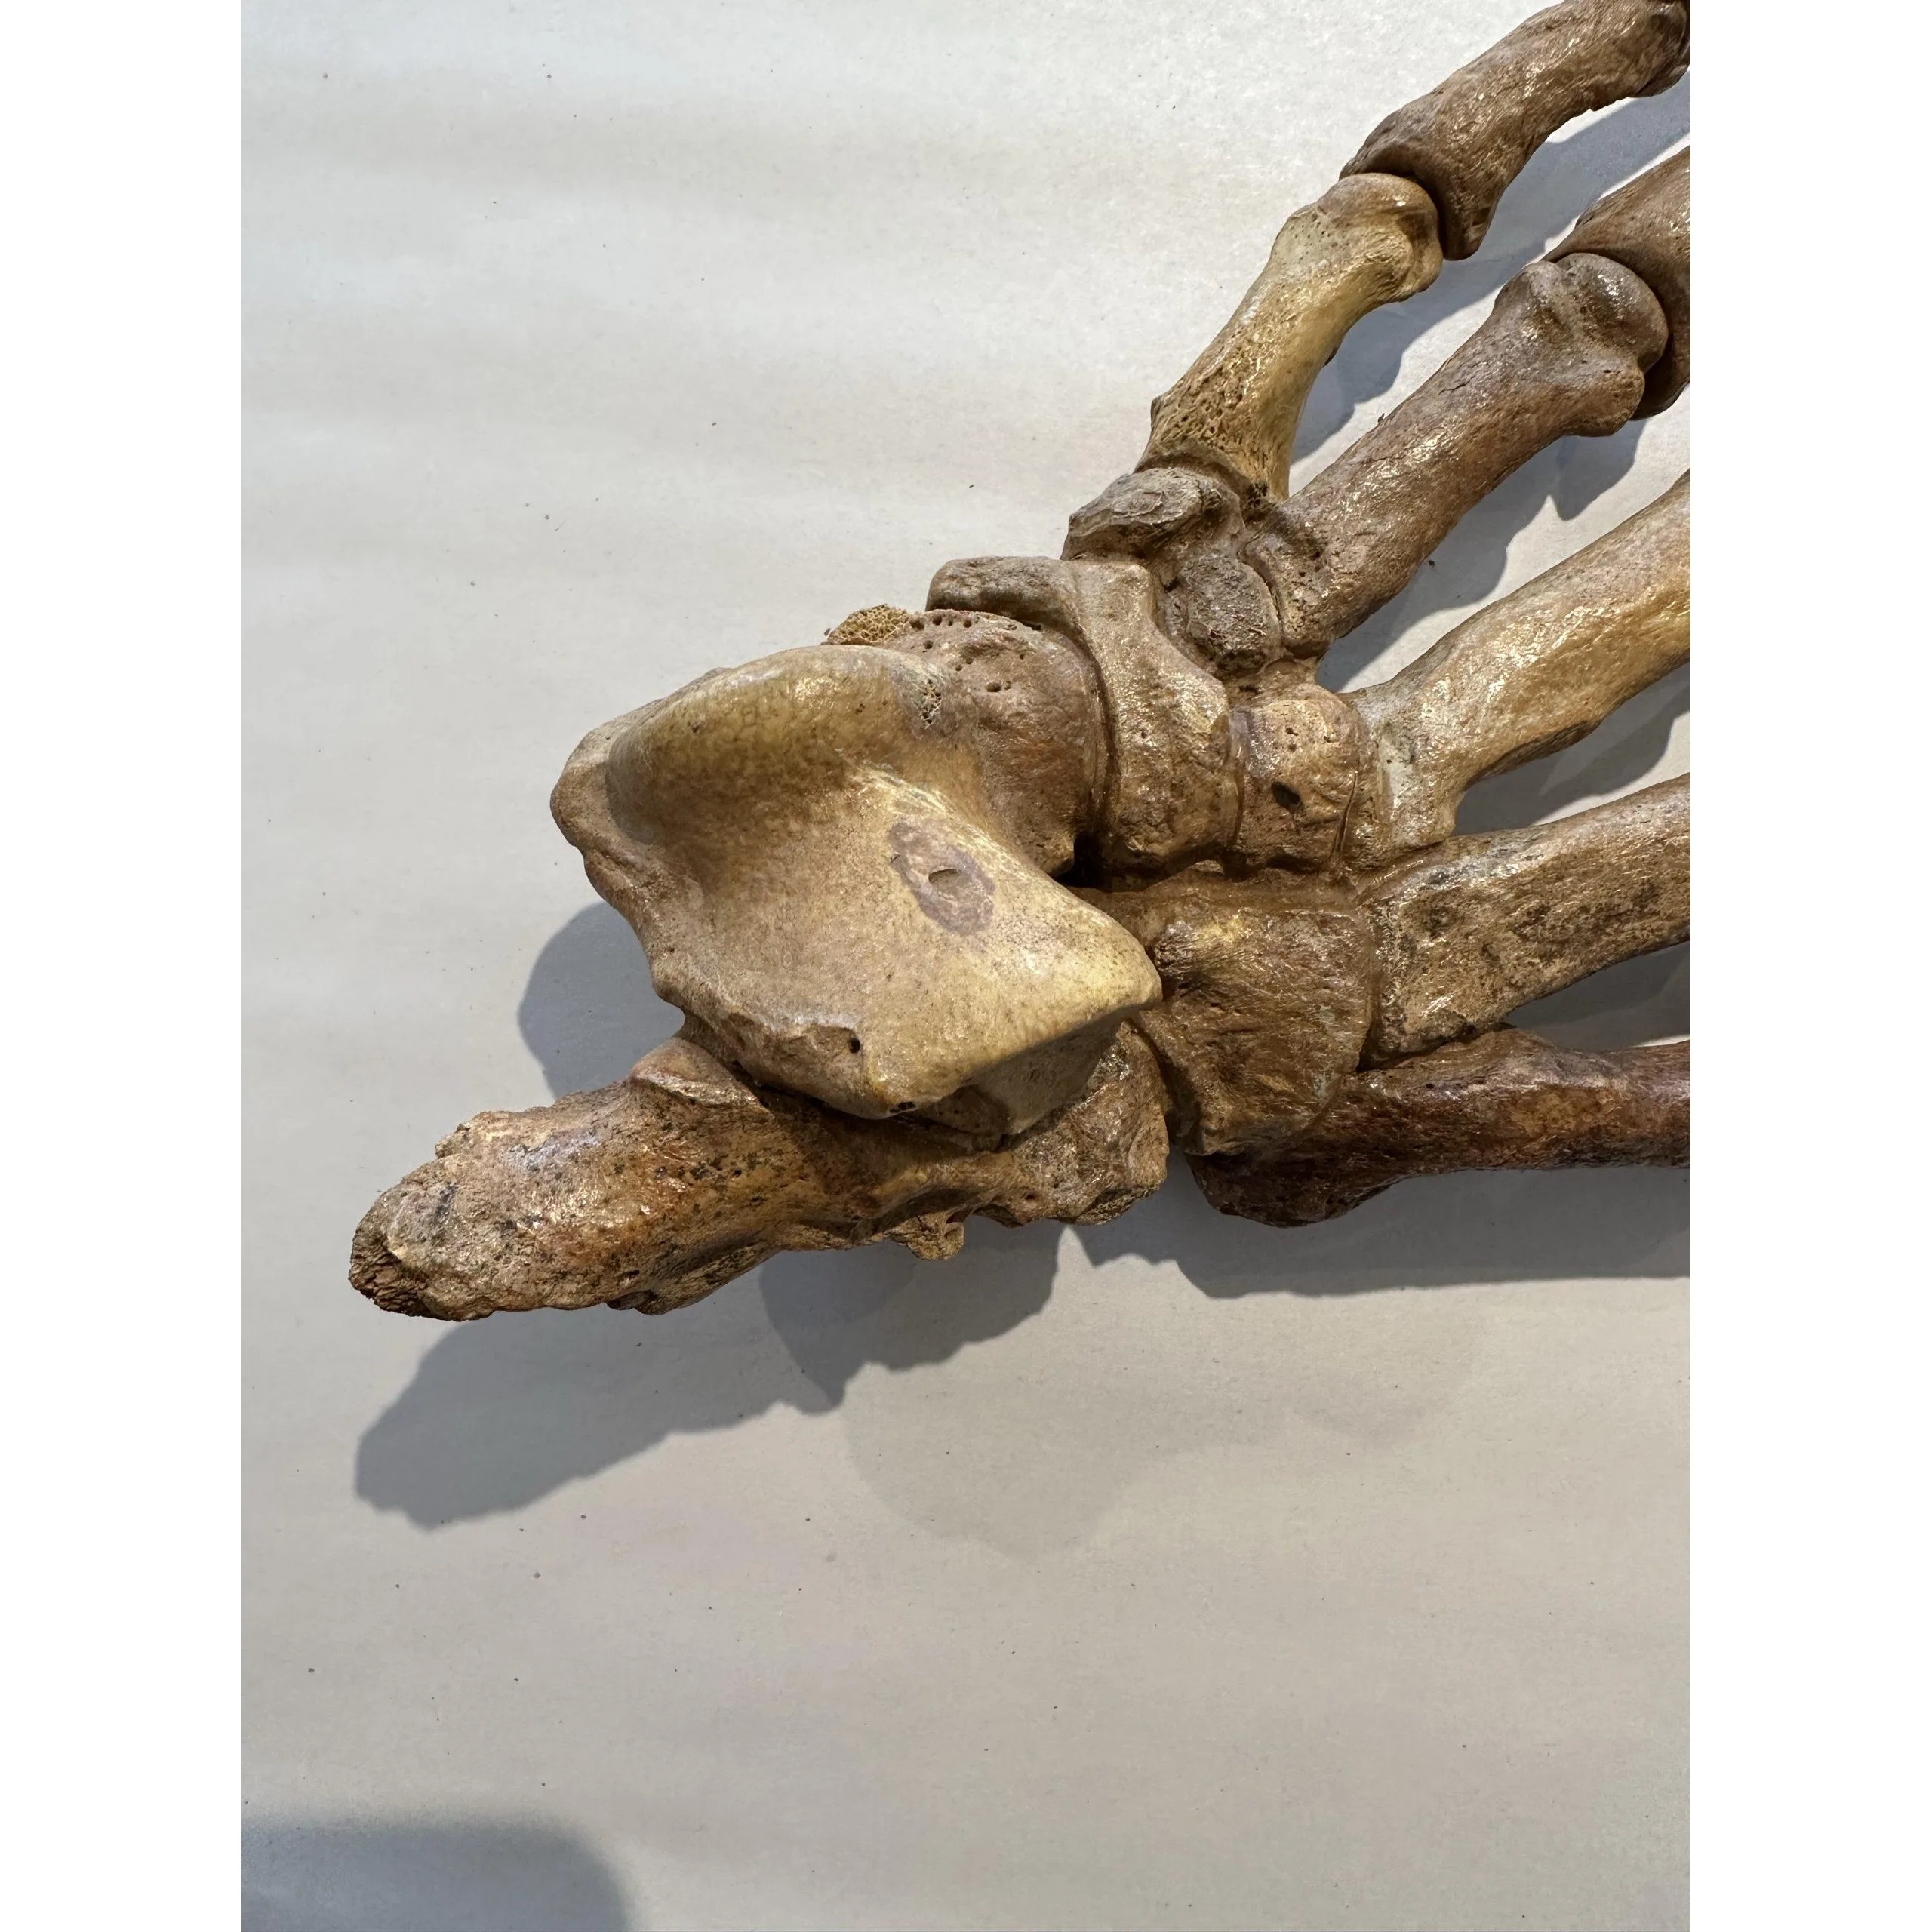 Bobcat Skull, Canada Prehistoric Online